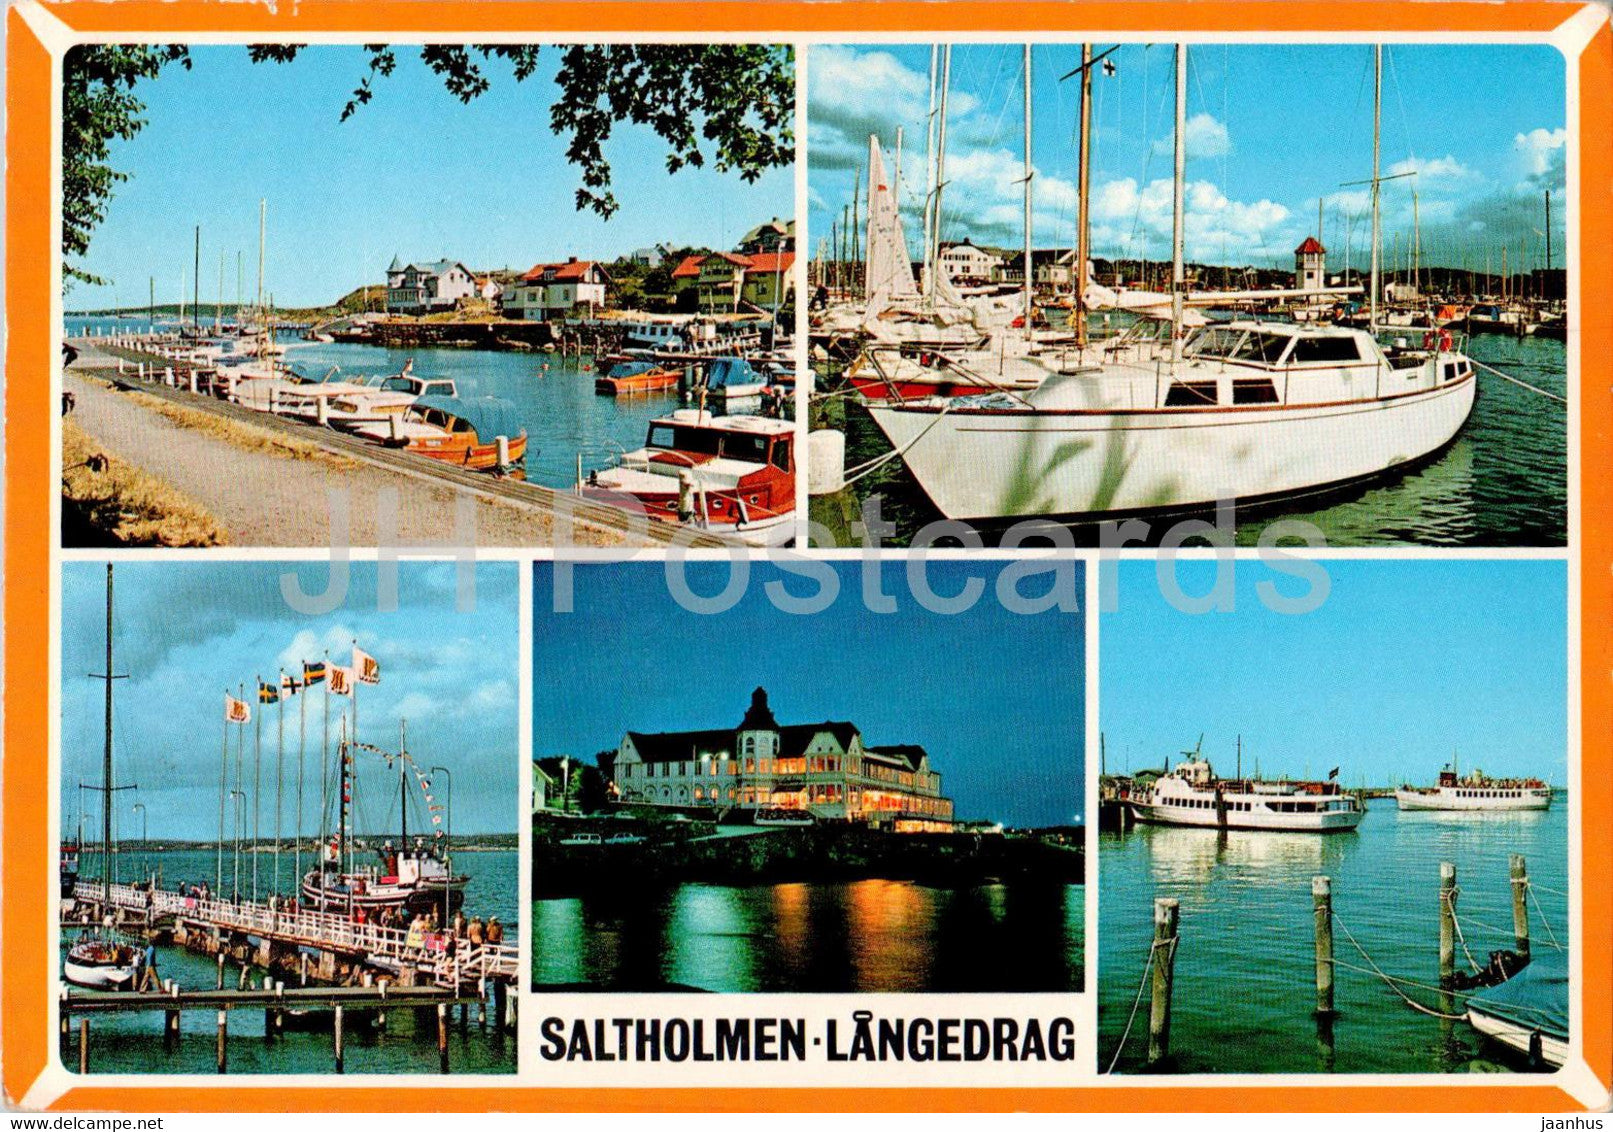 Saltholmen - Langedrag - multiview - 2/135 - 1977 - Sweden - used - JH Postcards